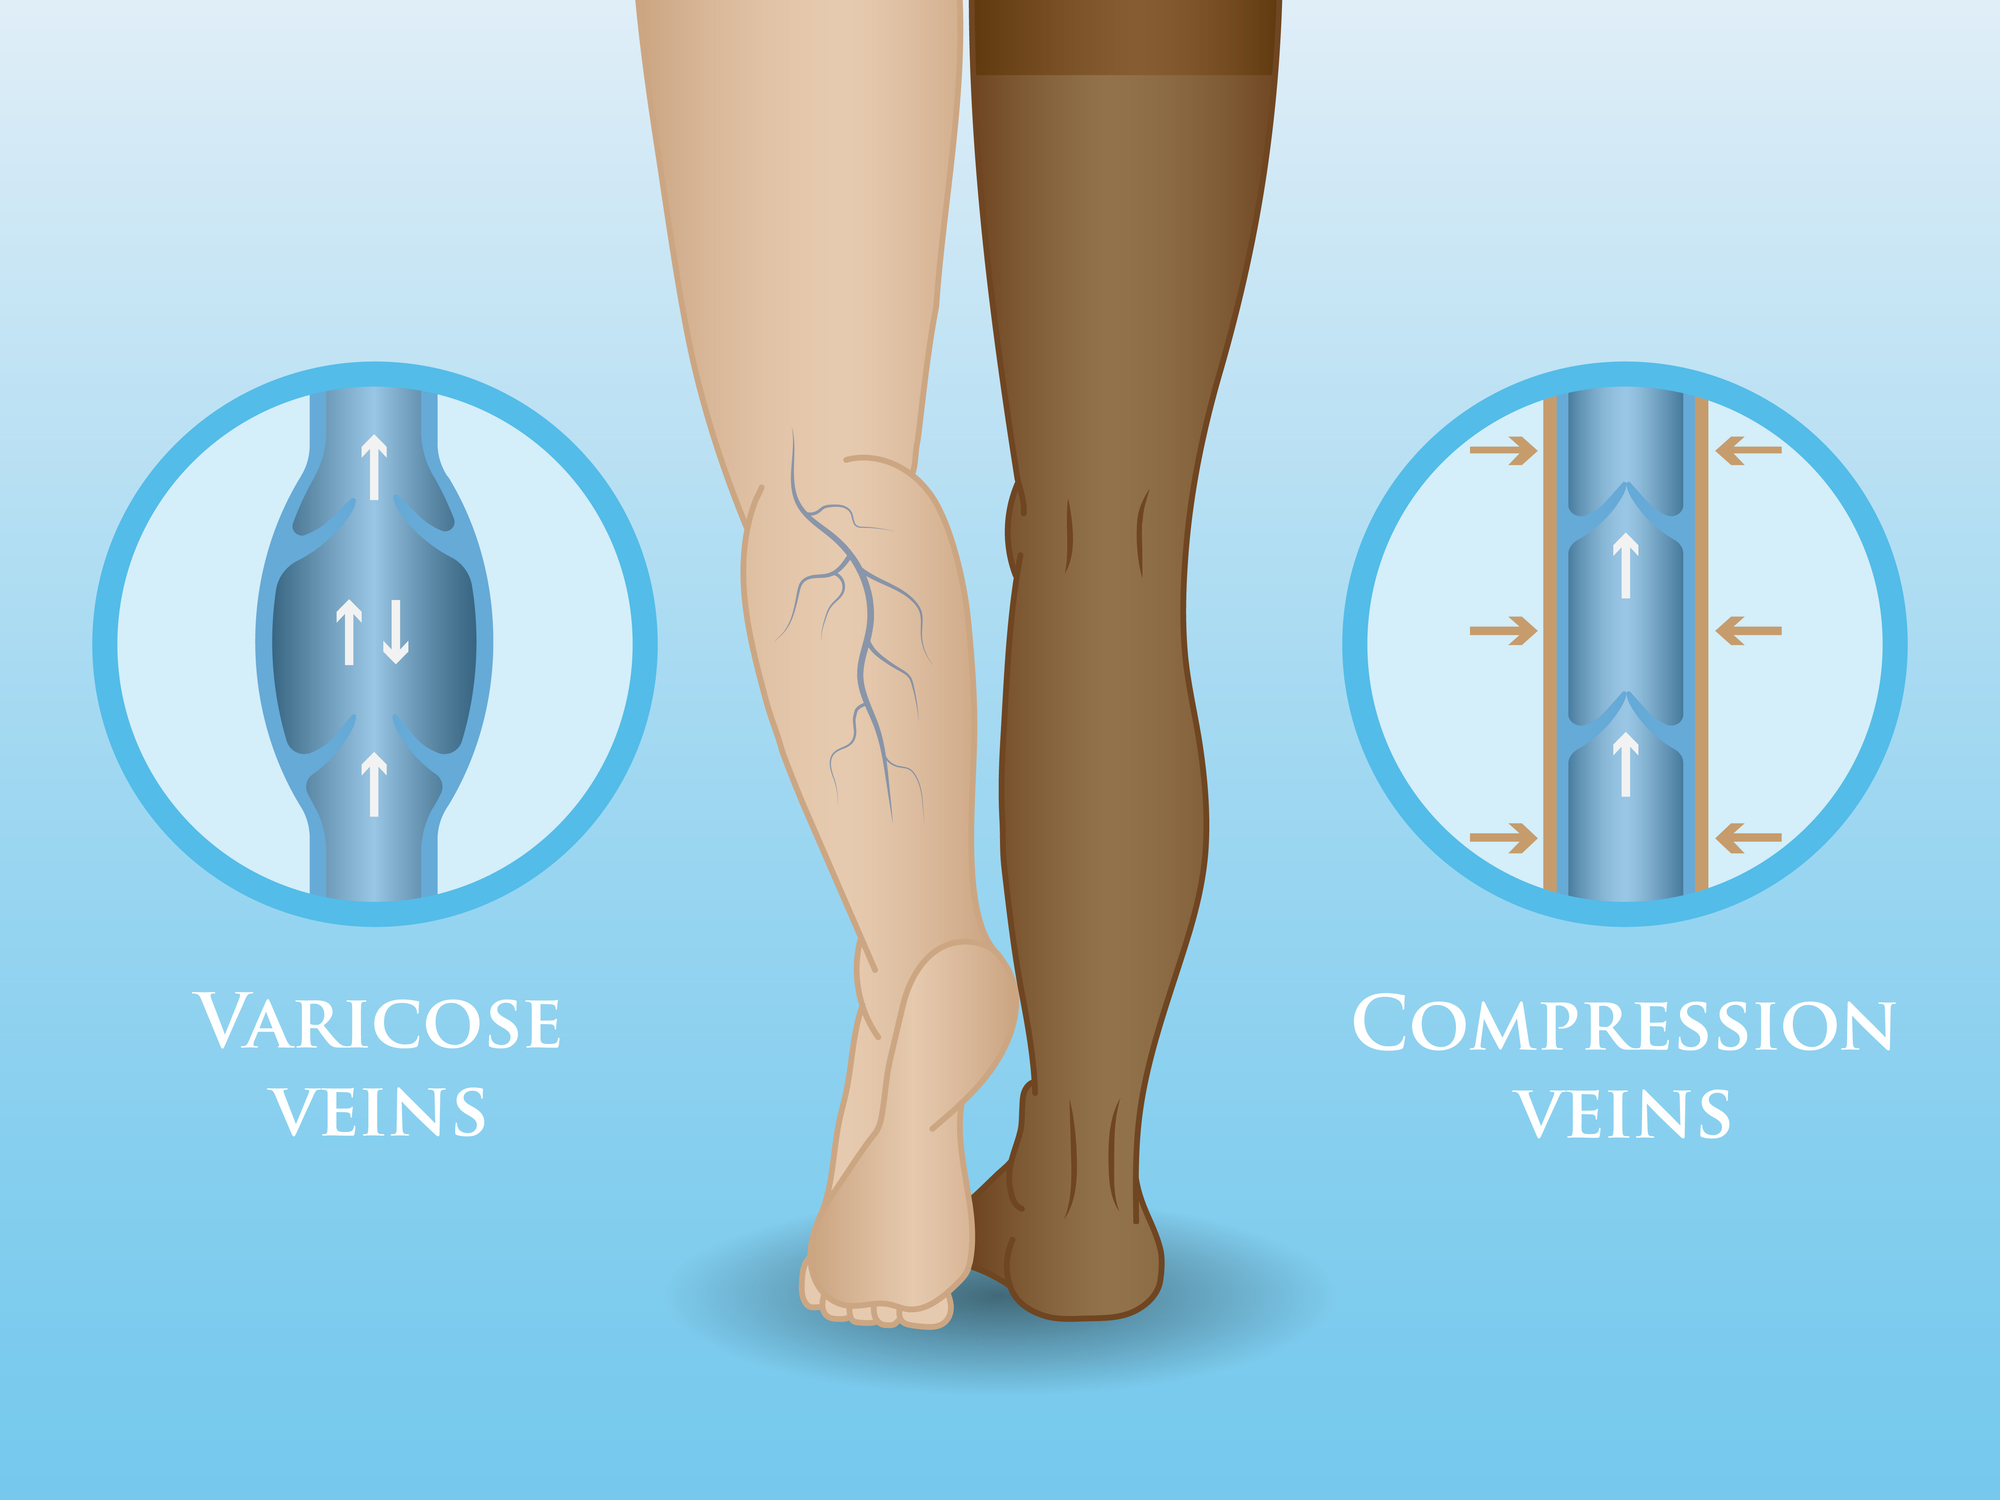 meg lehet-e operálni a varikózisokat a lábakon?